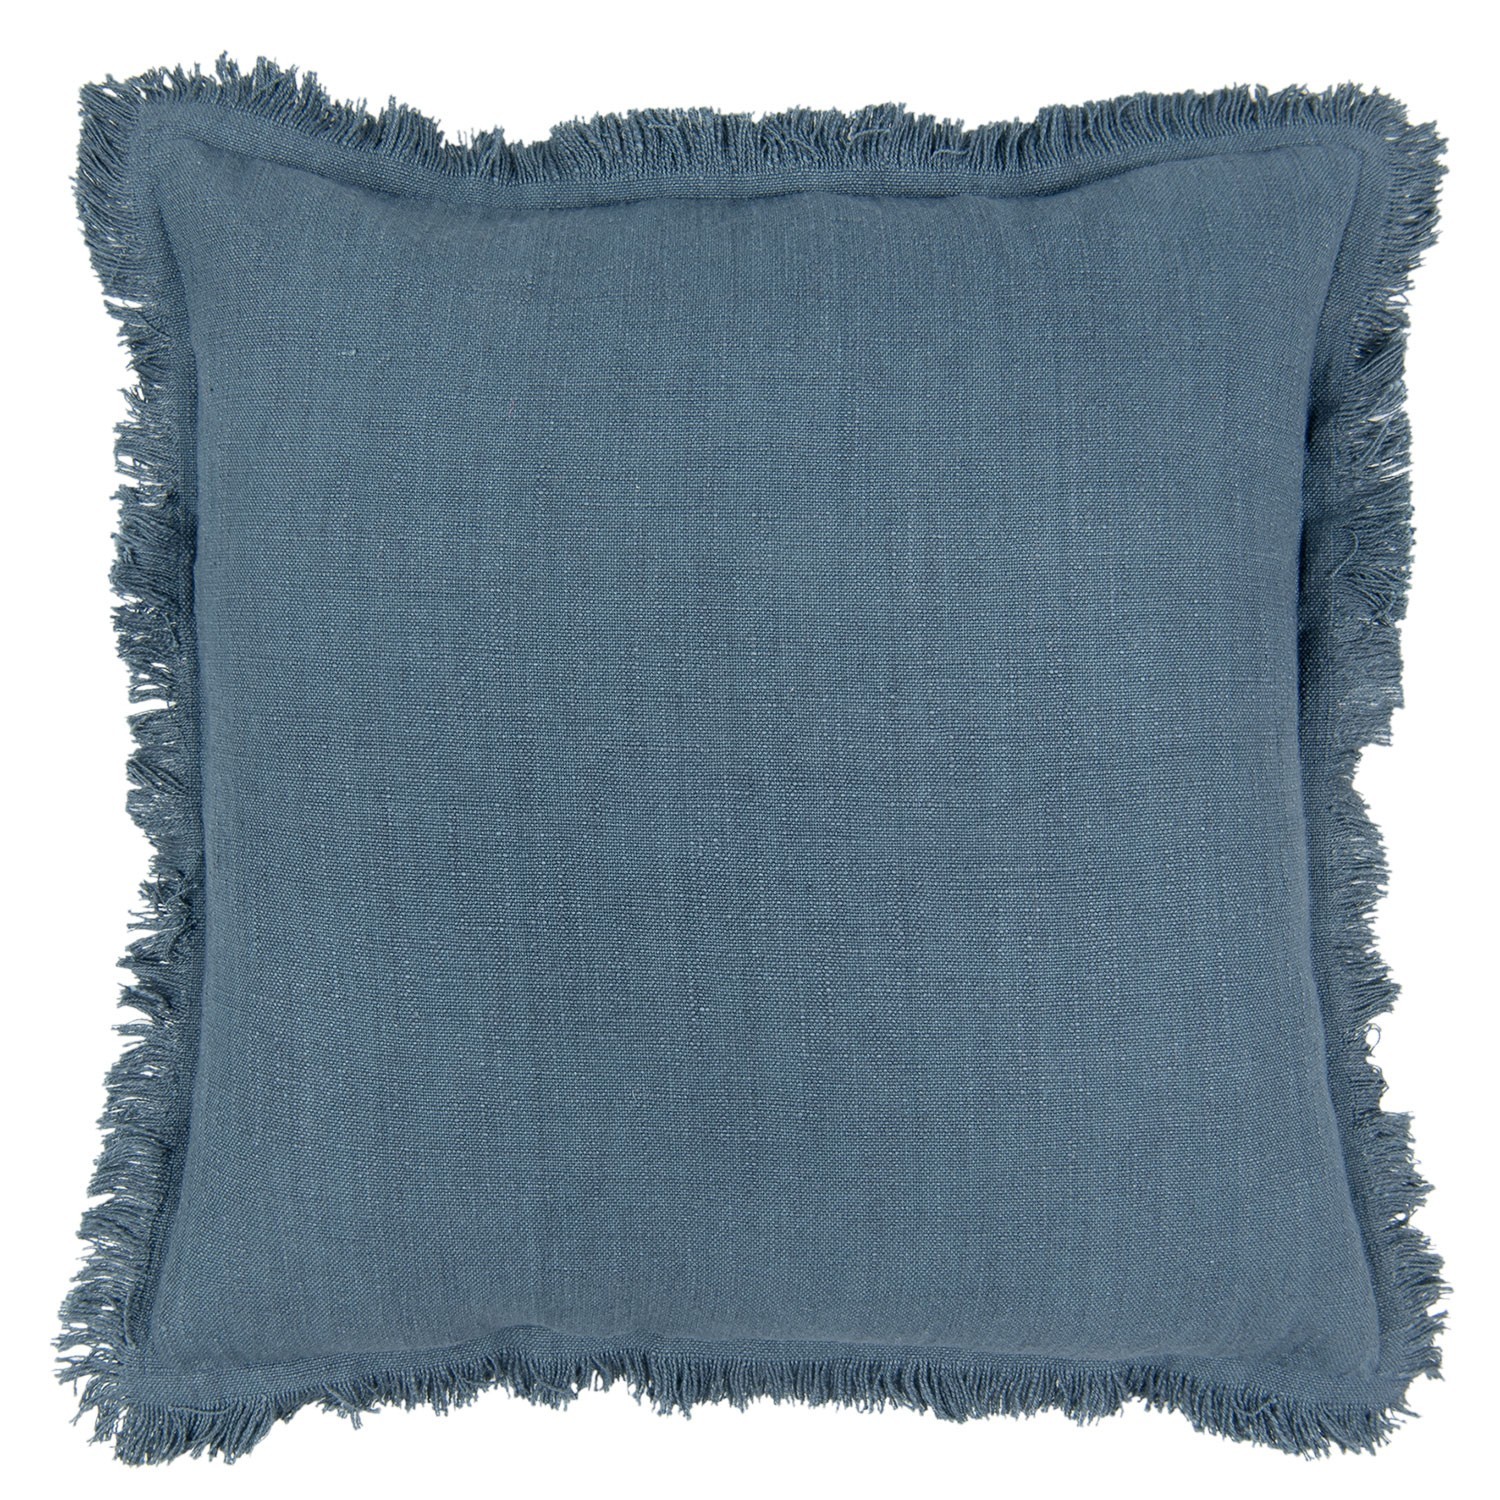 Tmavě modrý bavlněný polštář s trásněmi - 45*45 cm Clayre & Eef